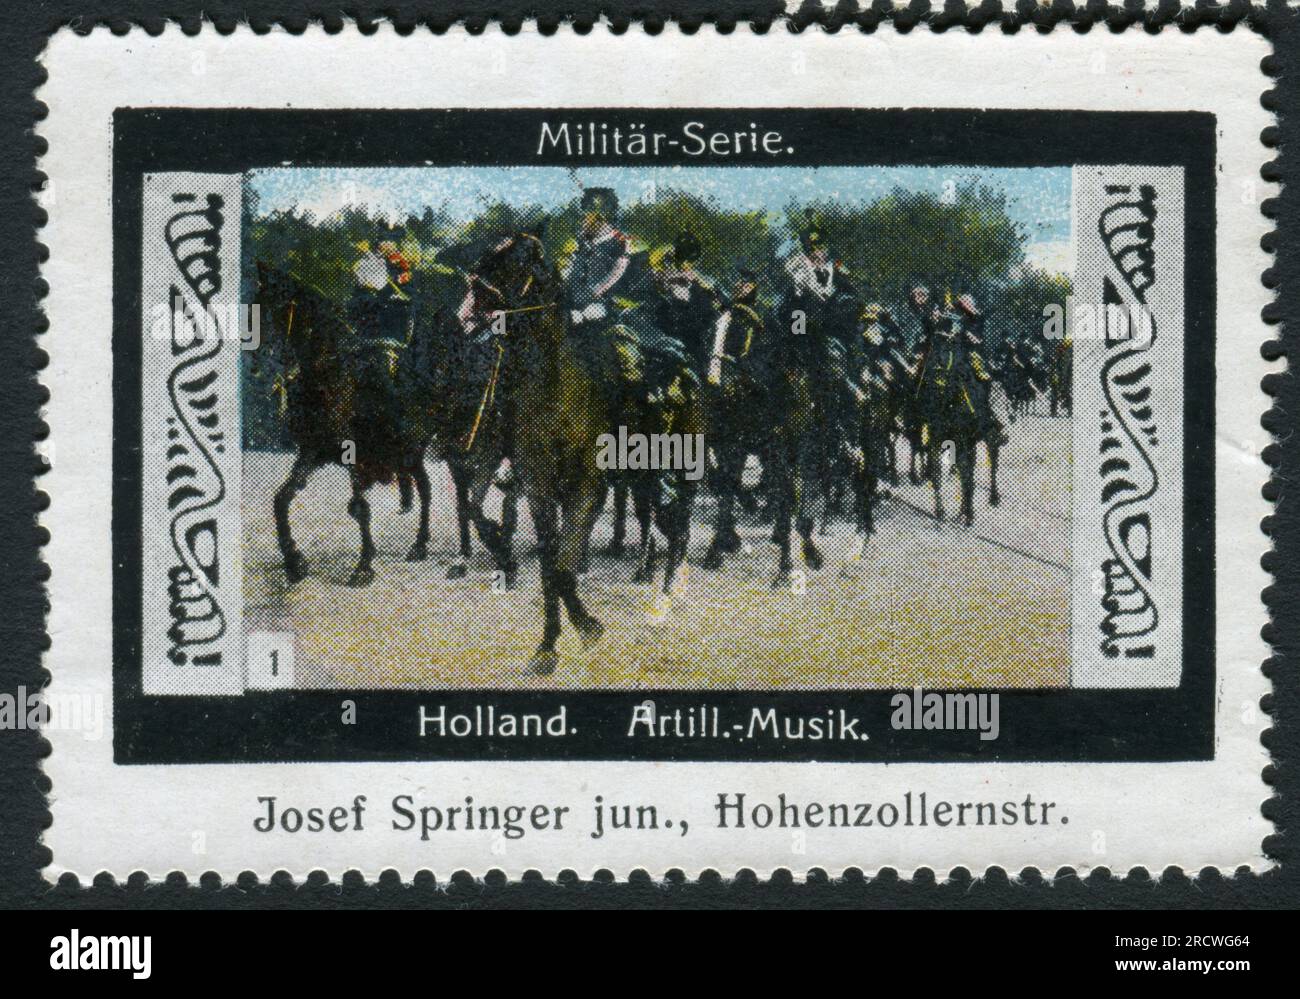 Publicité, Josef Springer junior, Munich, série militaire, cavalerie, Royaume des pays-Bas, INFORMATIONS-AUTORISATION-DROITS-SUPPLÉMENTAIRES-NON-AVAILABLE Banque D'Images